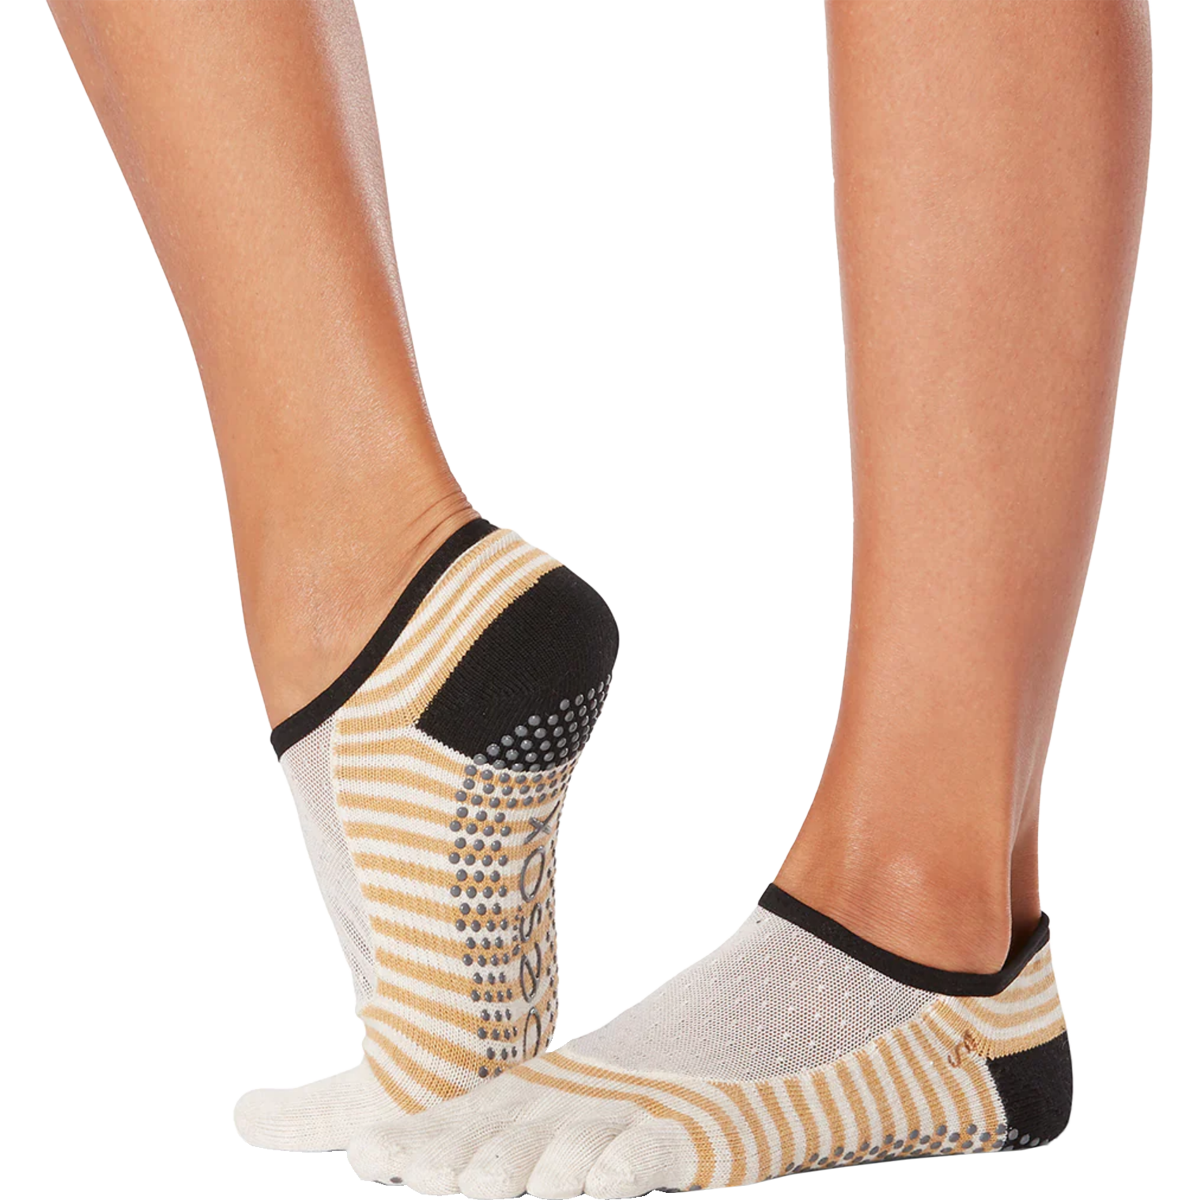 TOE SOX Half Toe Bellarina Grip Socks